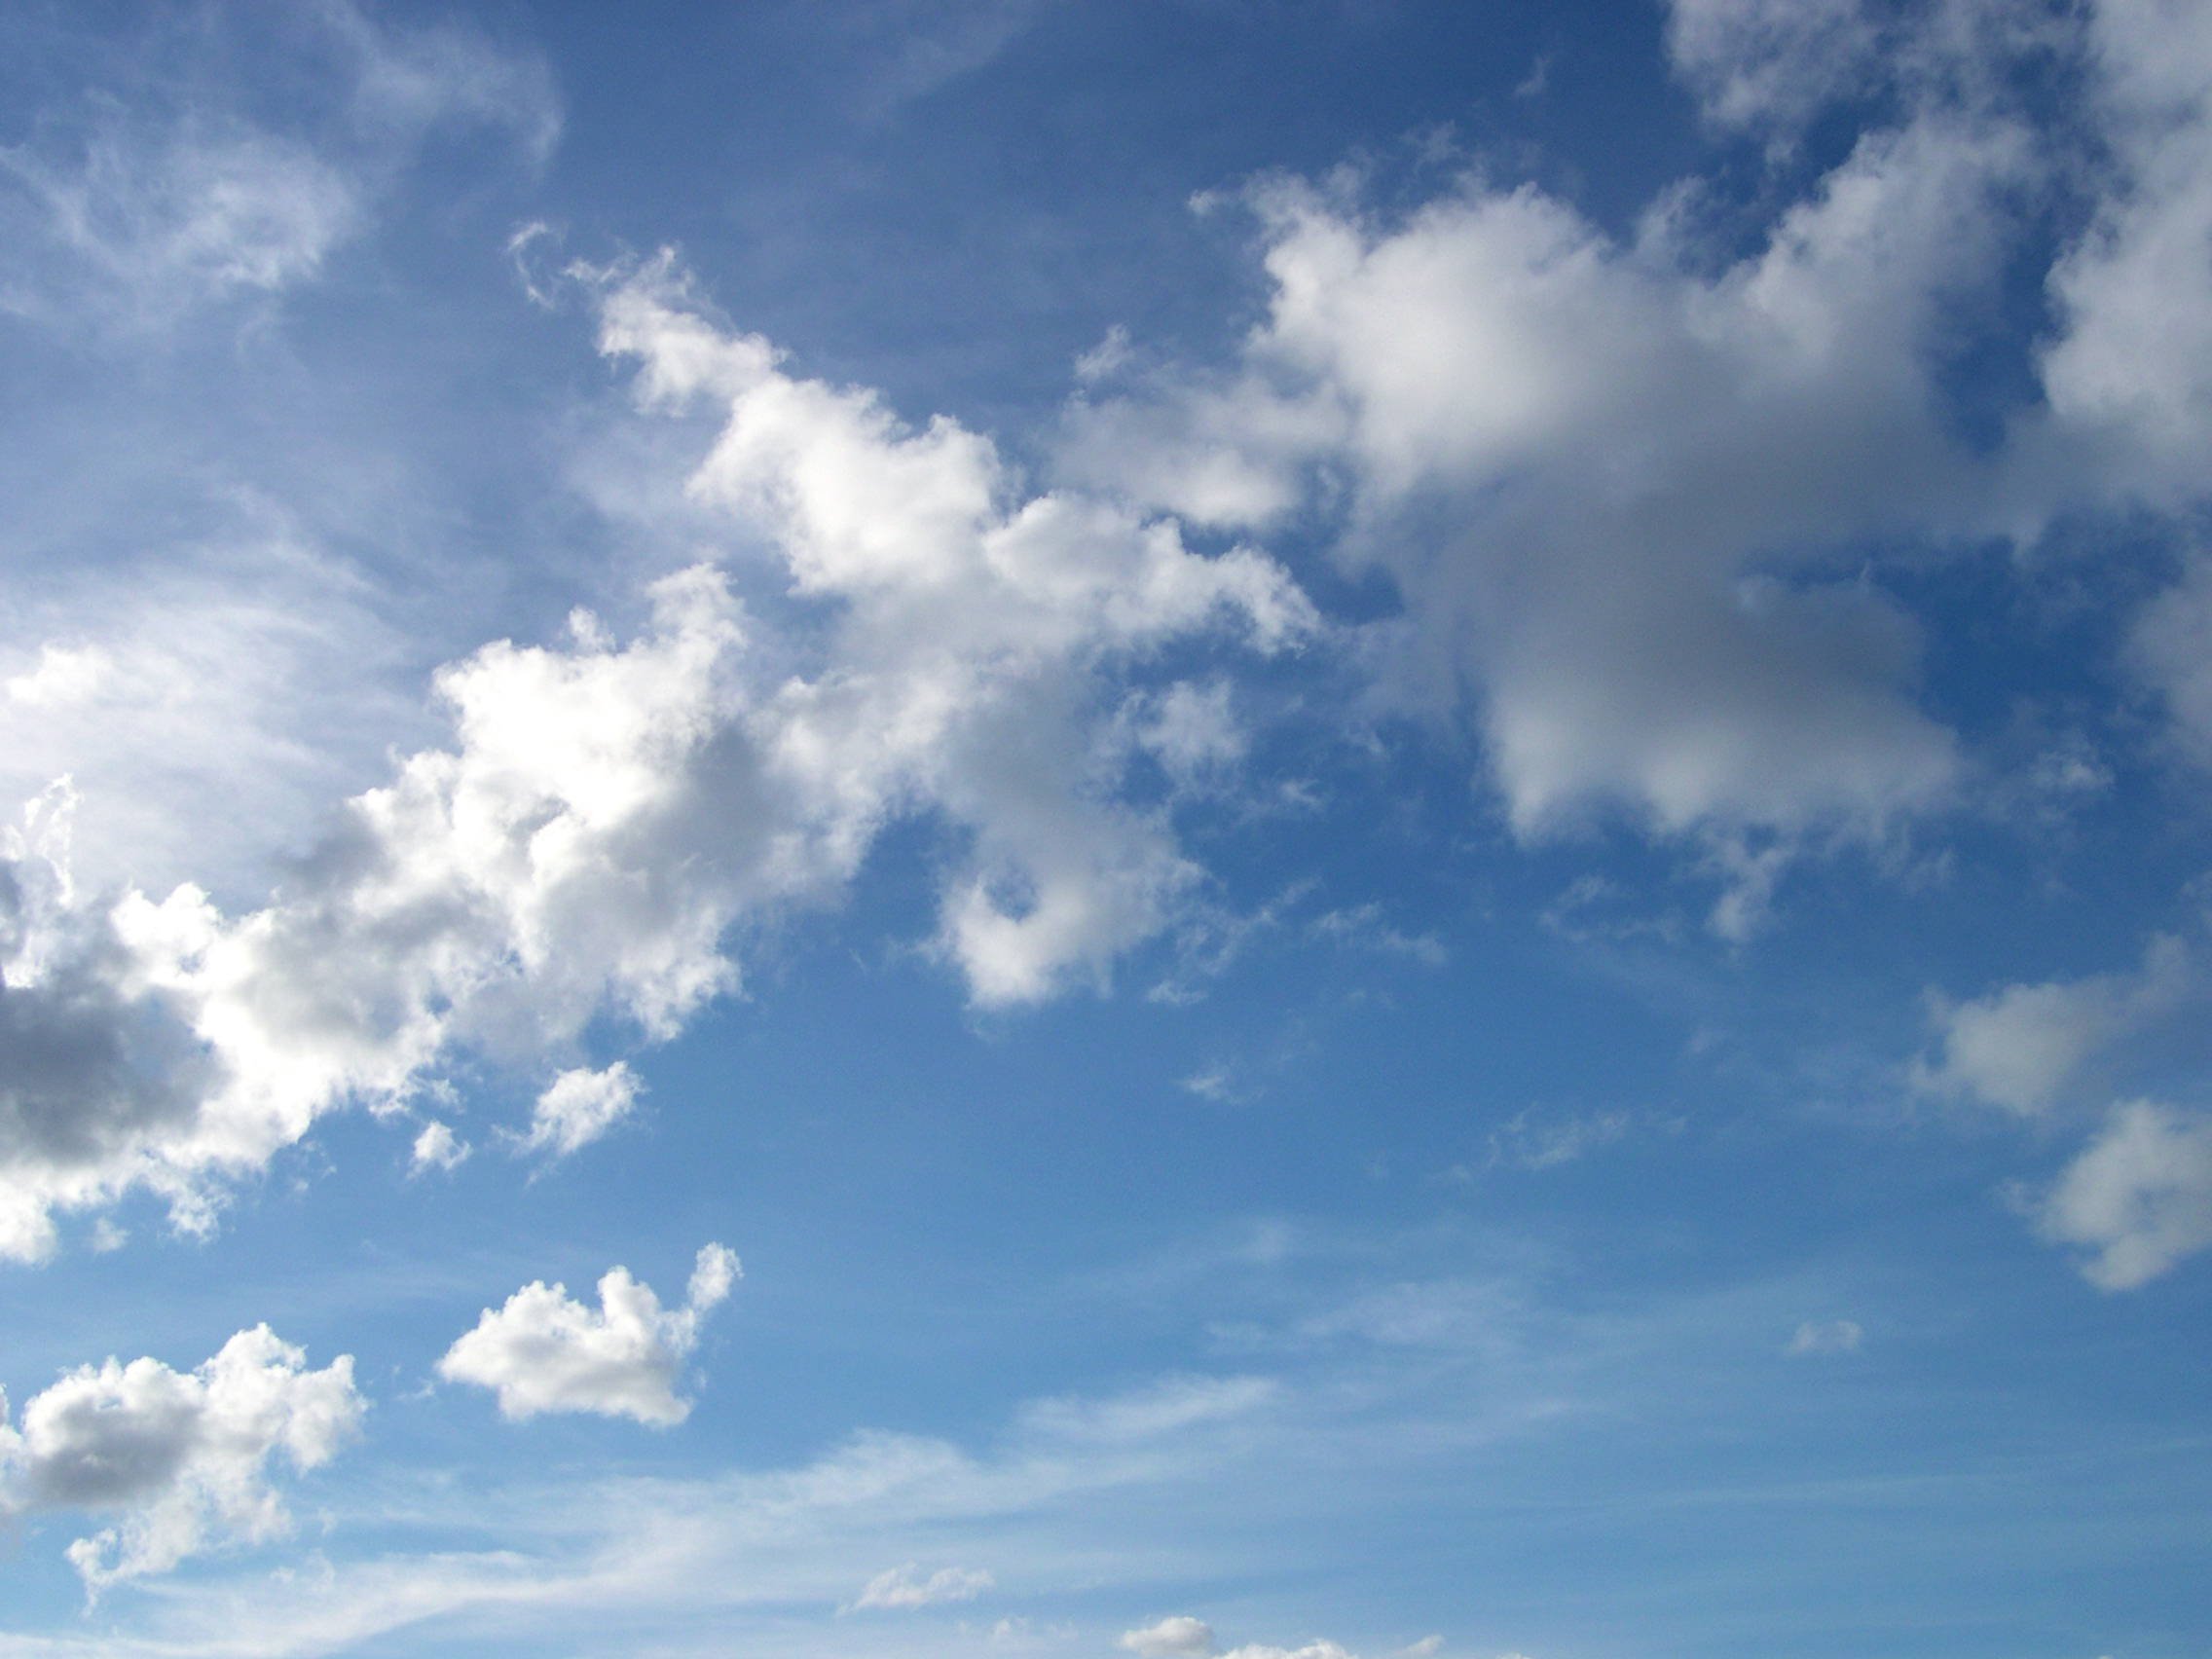 Clouds in the sky, Blue, Clear, Clouds, Cloudy, HQ Photo